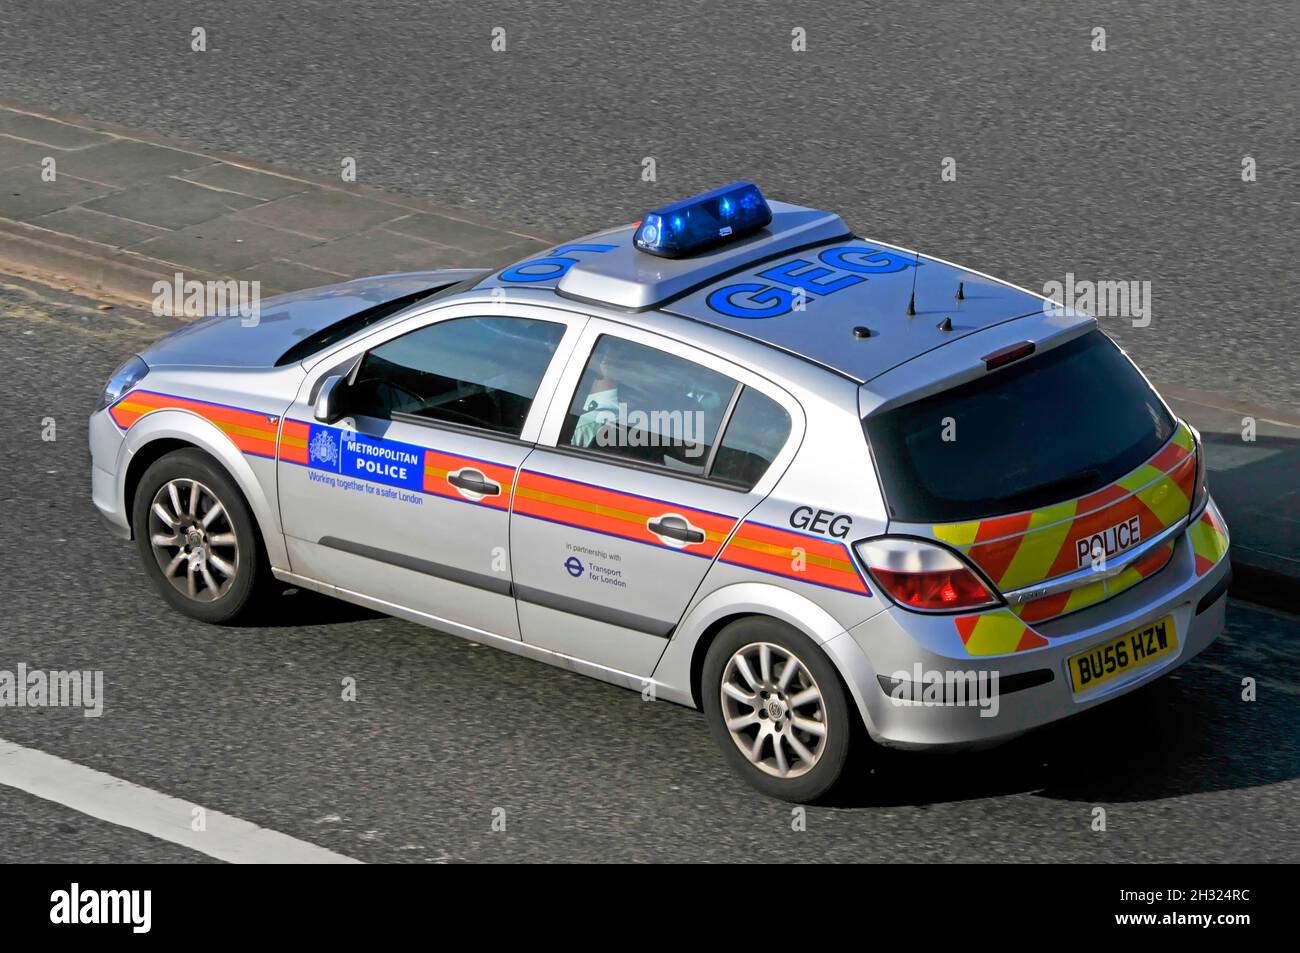 Vue aérienne de la scène de rue, numéros de toit et de côté sur le véhicule de patrouille de police métropolitaine roulant à vitesse rapide lors d'un appel d'urgence au feu bleu Londres Angleterre Royaume-Uni Banque D'Images